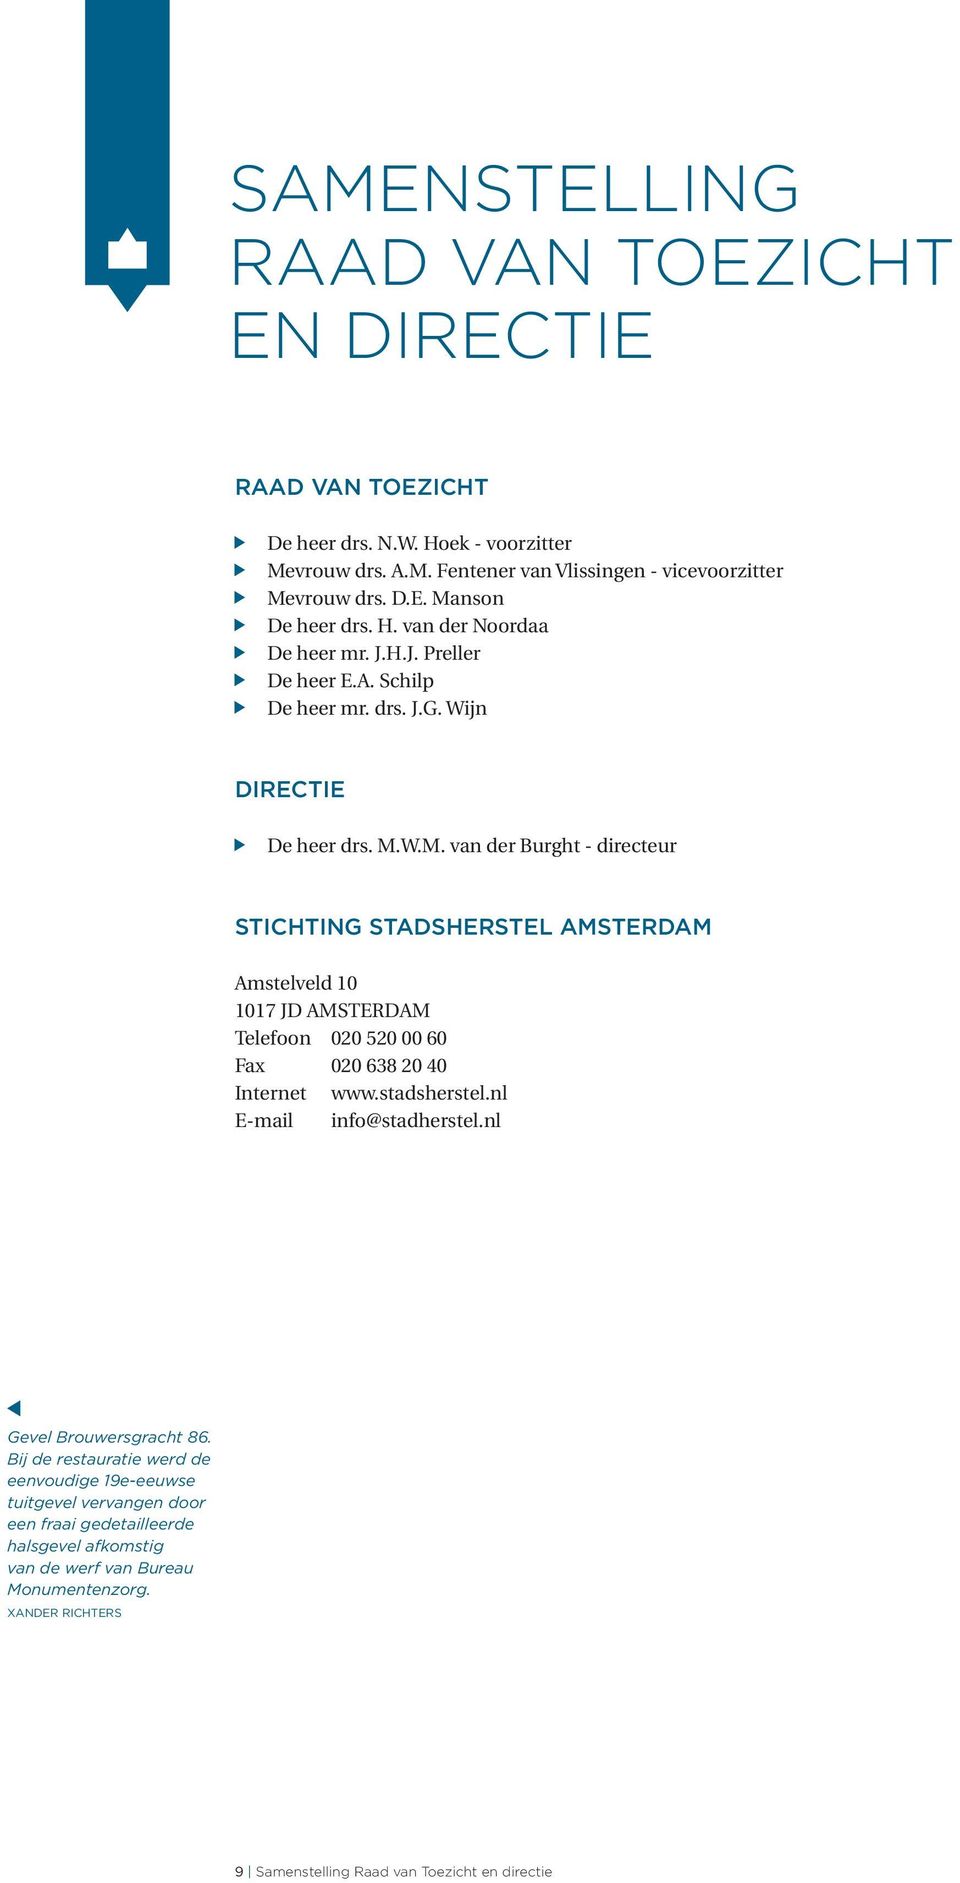 W.M. van der Burght - directeur STICHTING STADSHERSTEL AMSTERDAM Amstelveld 10 1017 JD AMSTERDAM Telefoon 020 520 00 60 Fax 020 638 20 40 Internet www.stadsherstel.